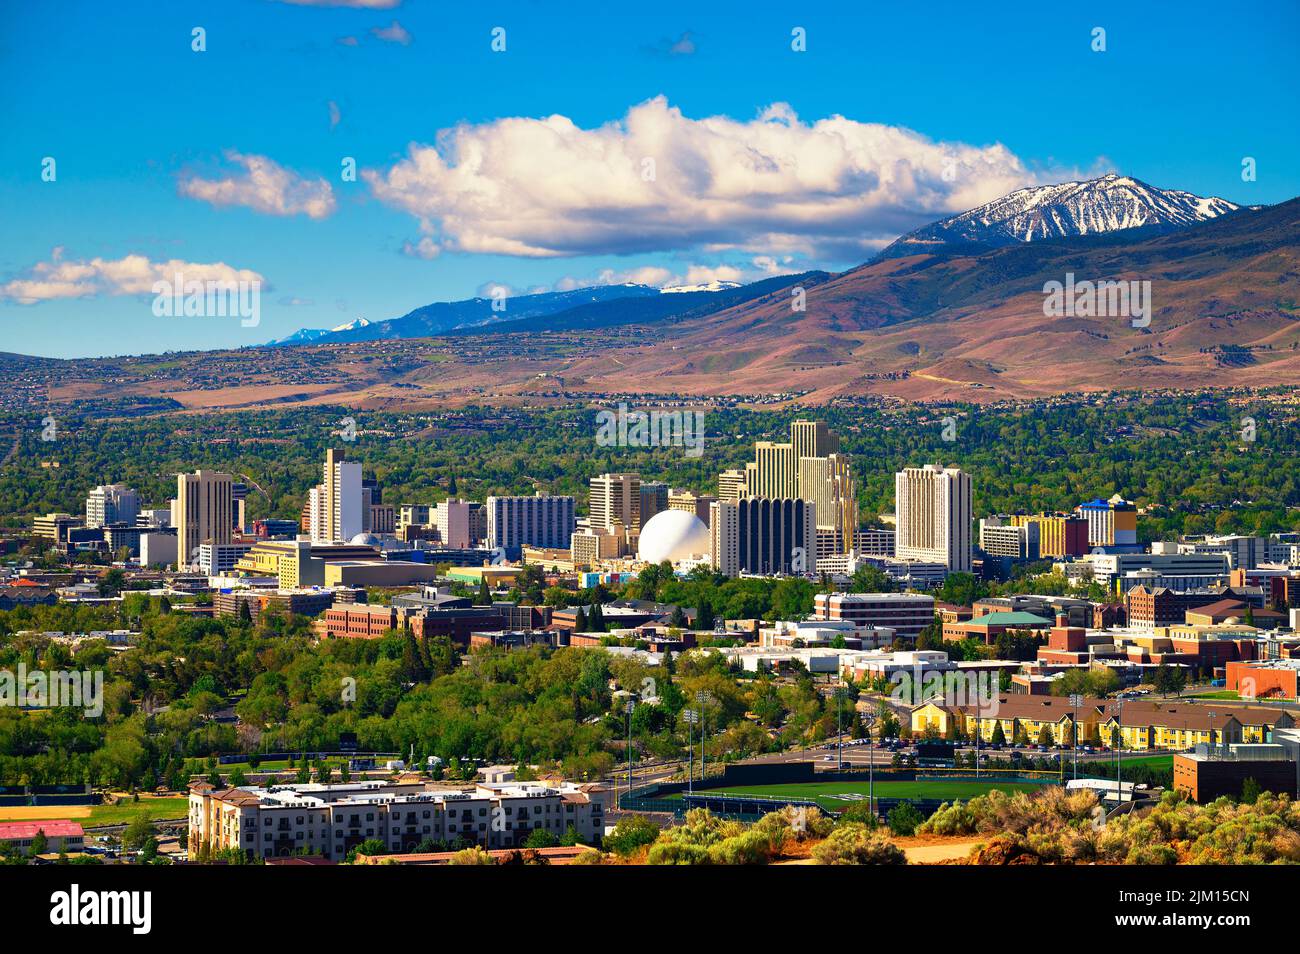 El horizonte del centro de Reno, Nevada, con hoteles, casinos y montañas circundantes Foto de stock